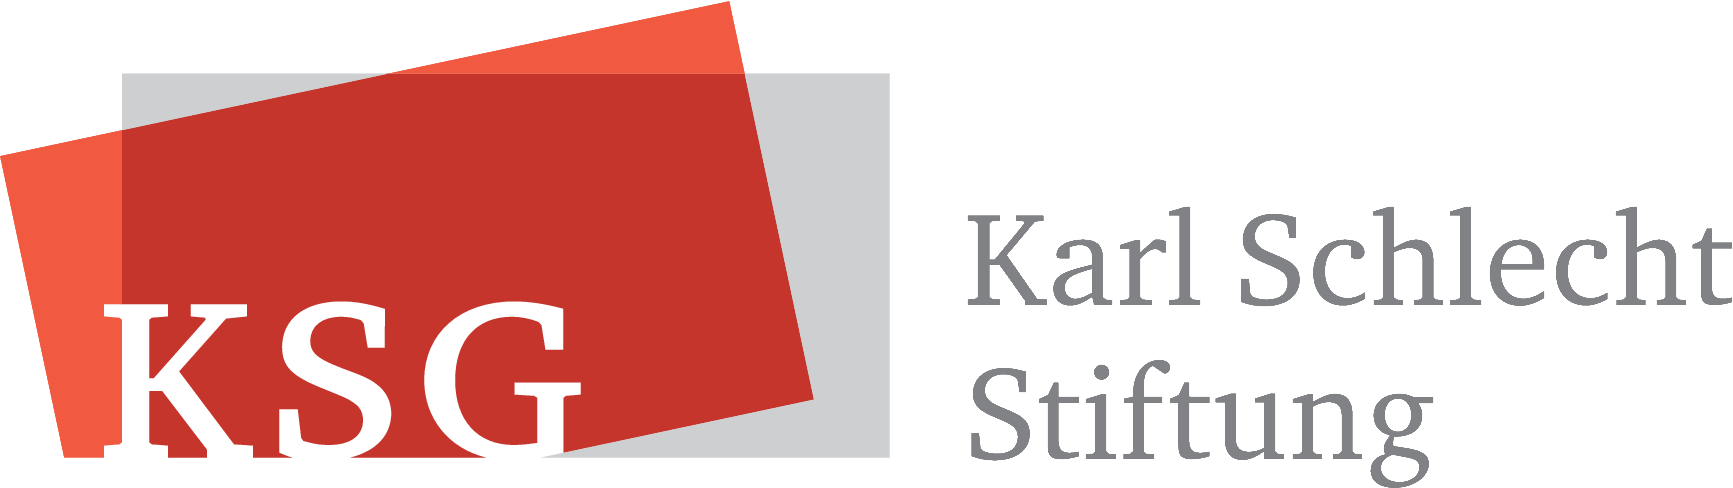 Karl Schlecht Stiftung Logo